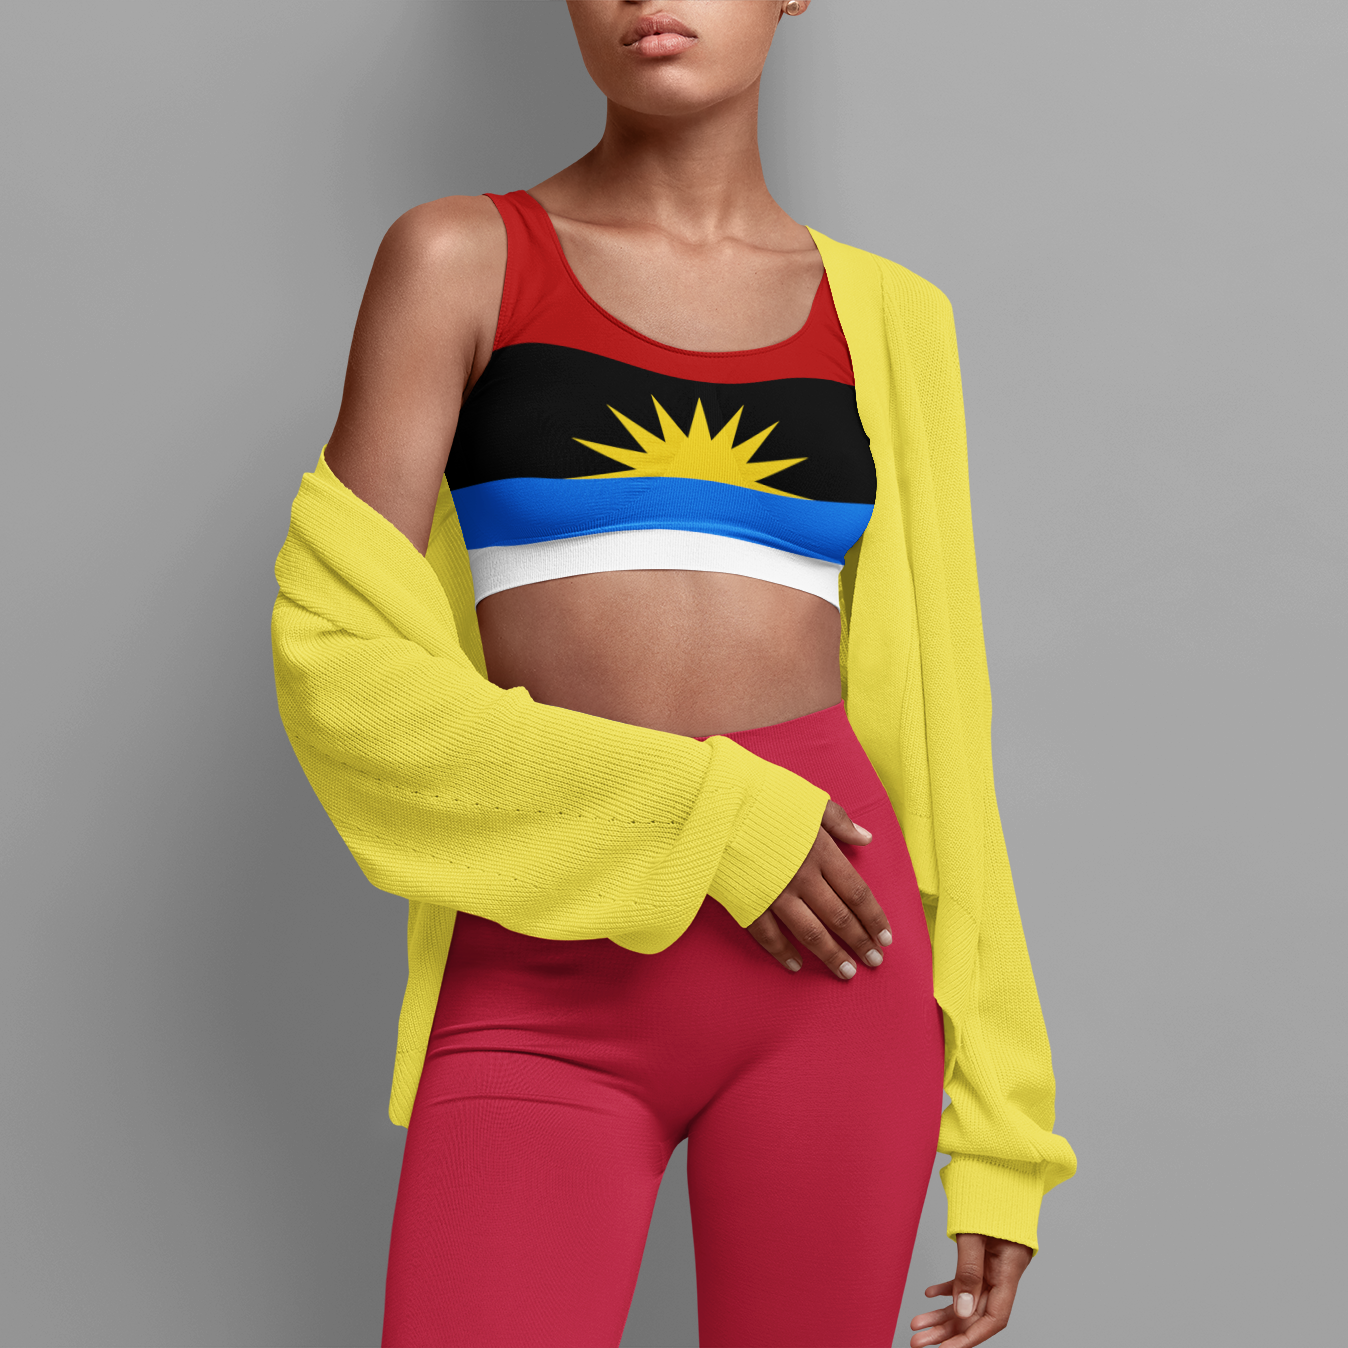 Antigua Flag - Sports bra